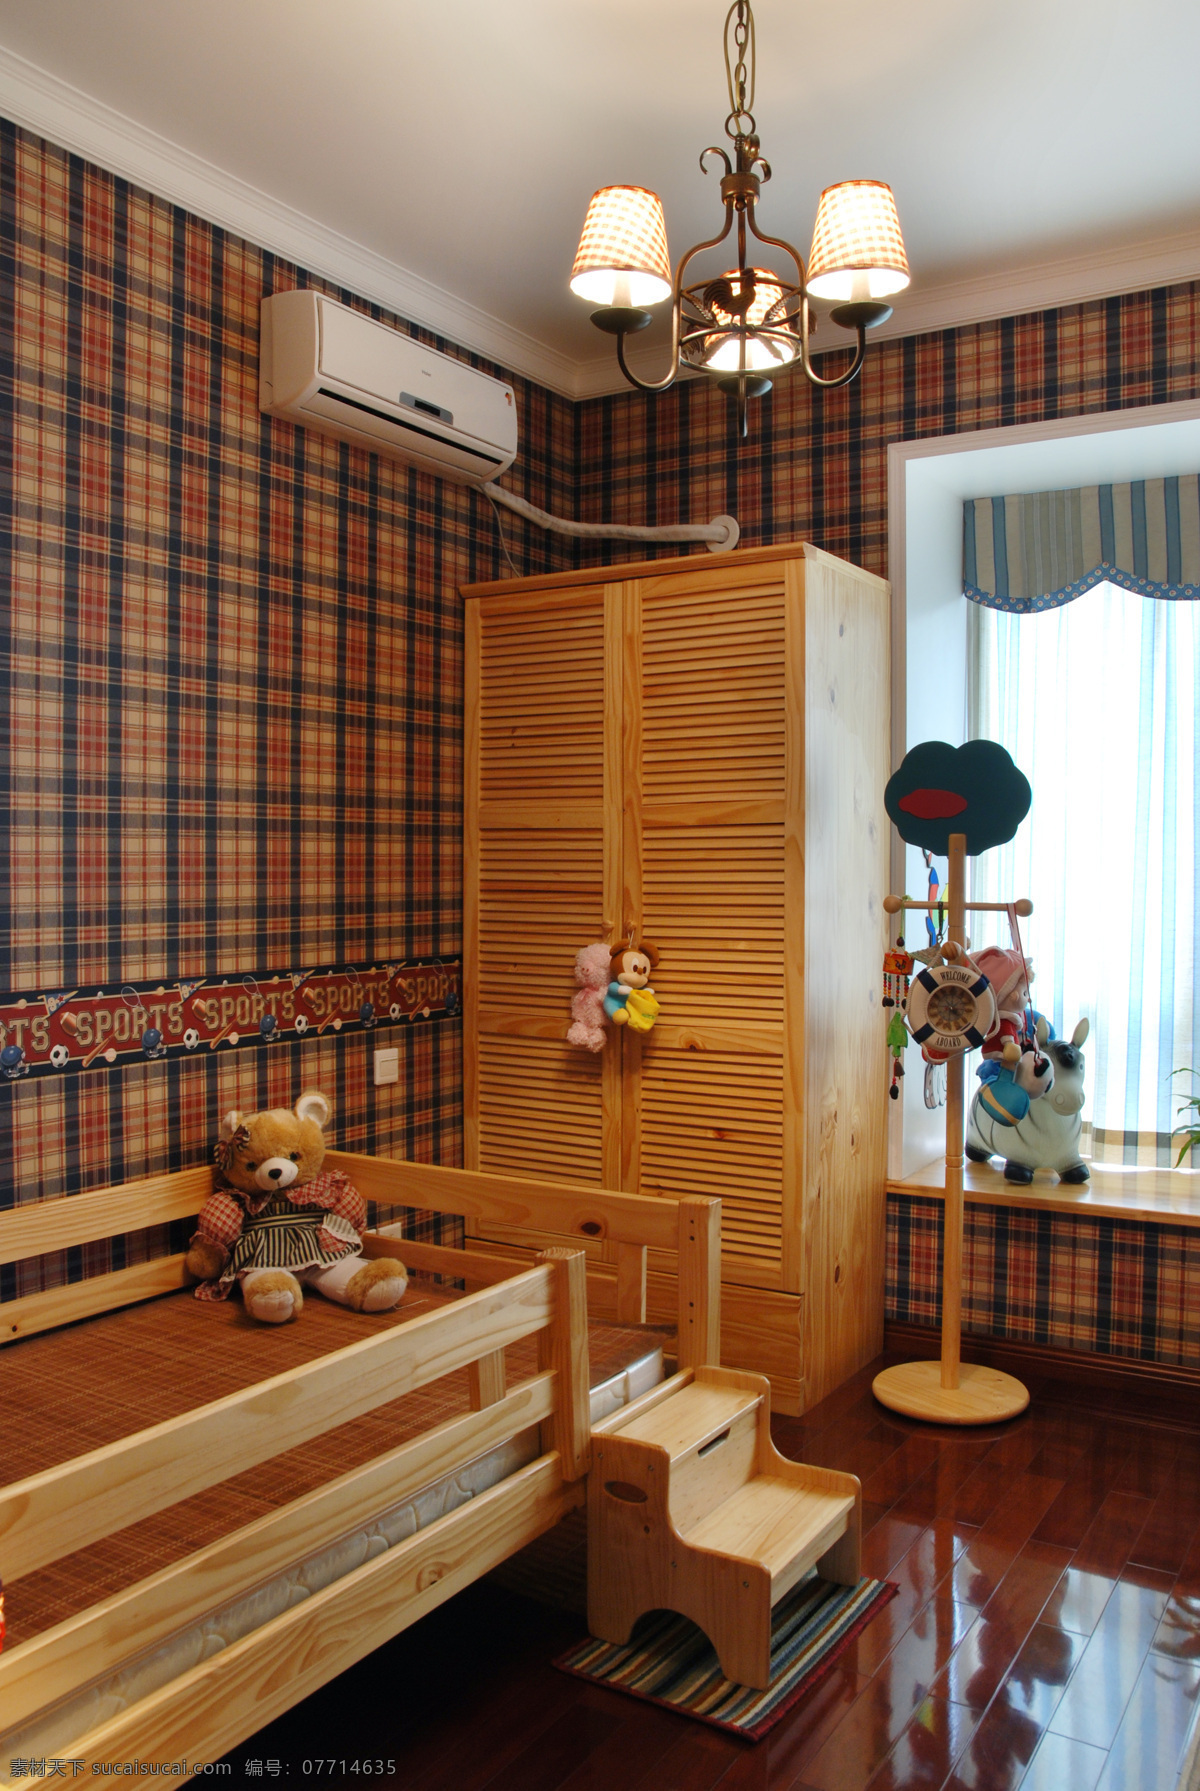 中式 古典 风 室内设计 卧室 衣柜 效果图 床 吊灯 窗帘 吧台 现代 简约 家装